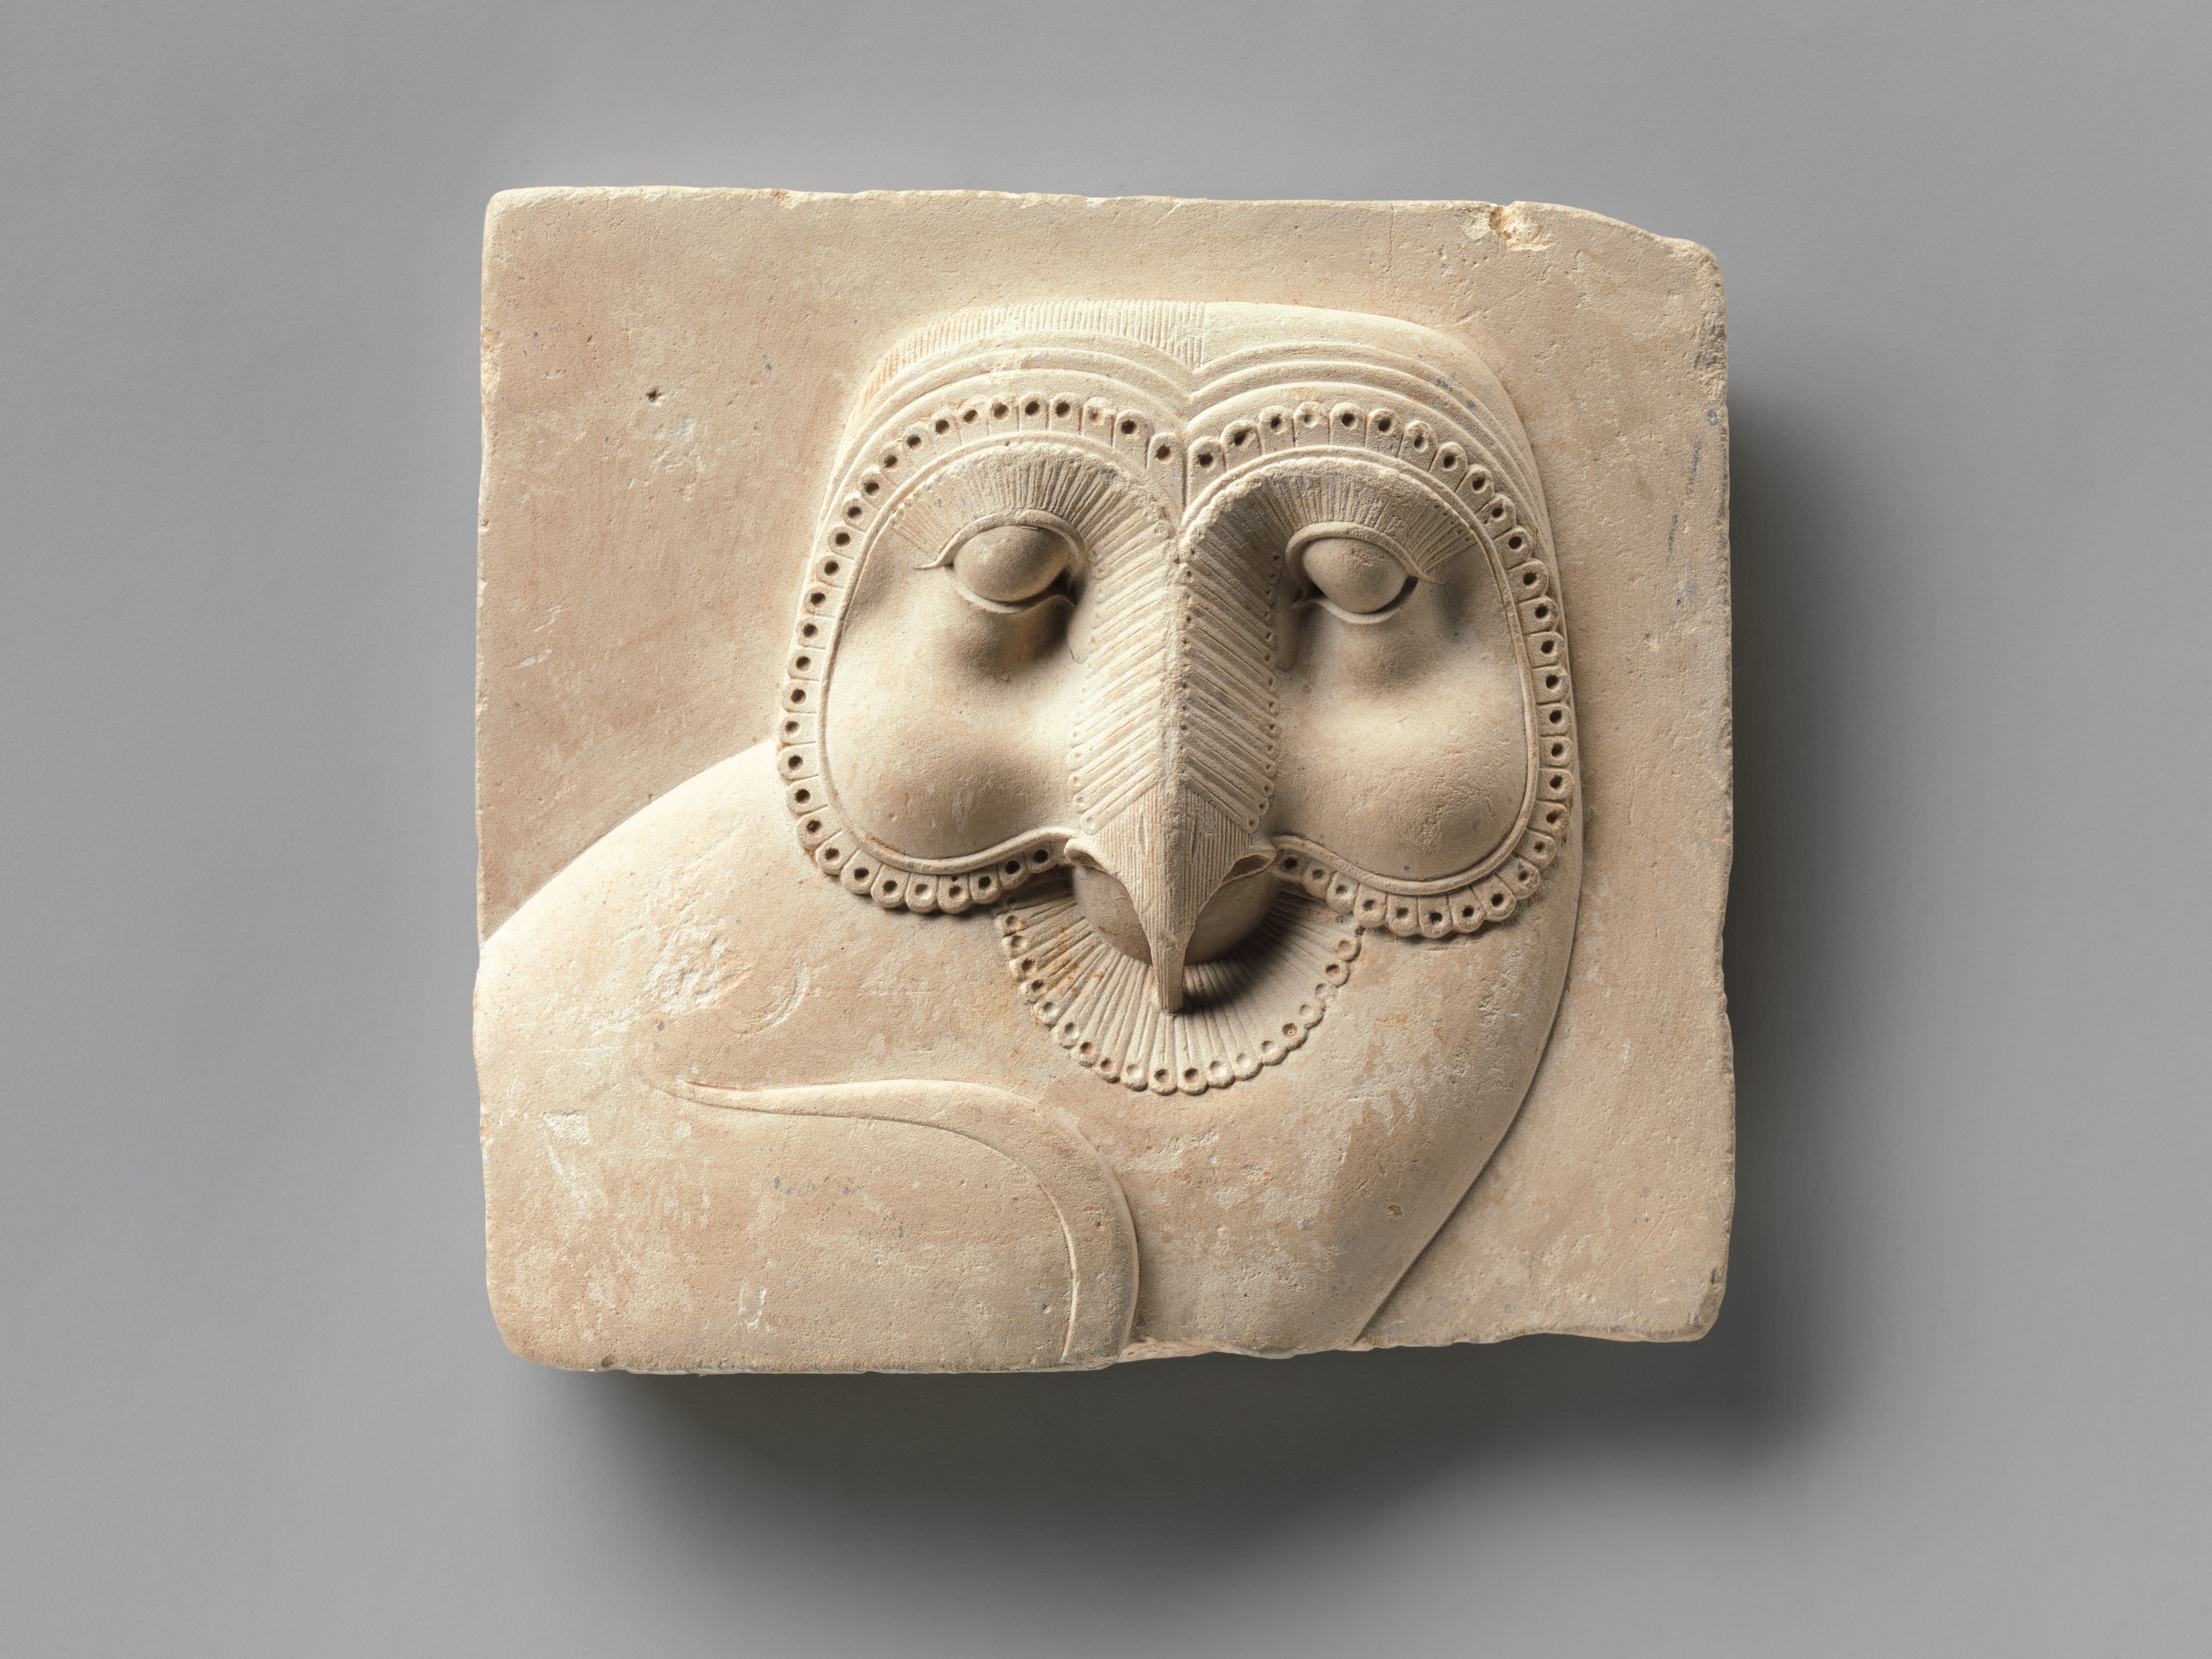 貓頭鷹臉的象形浮雕牌匾 by Unknown Artist - 公元前400–30年 - 10.3 x 11.1 x 2.5 cm 